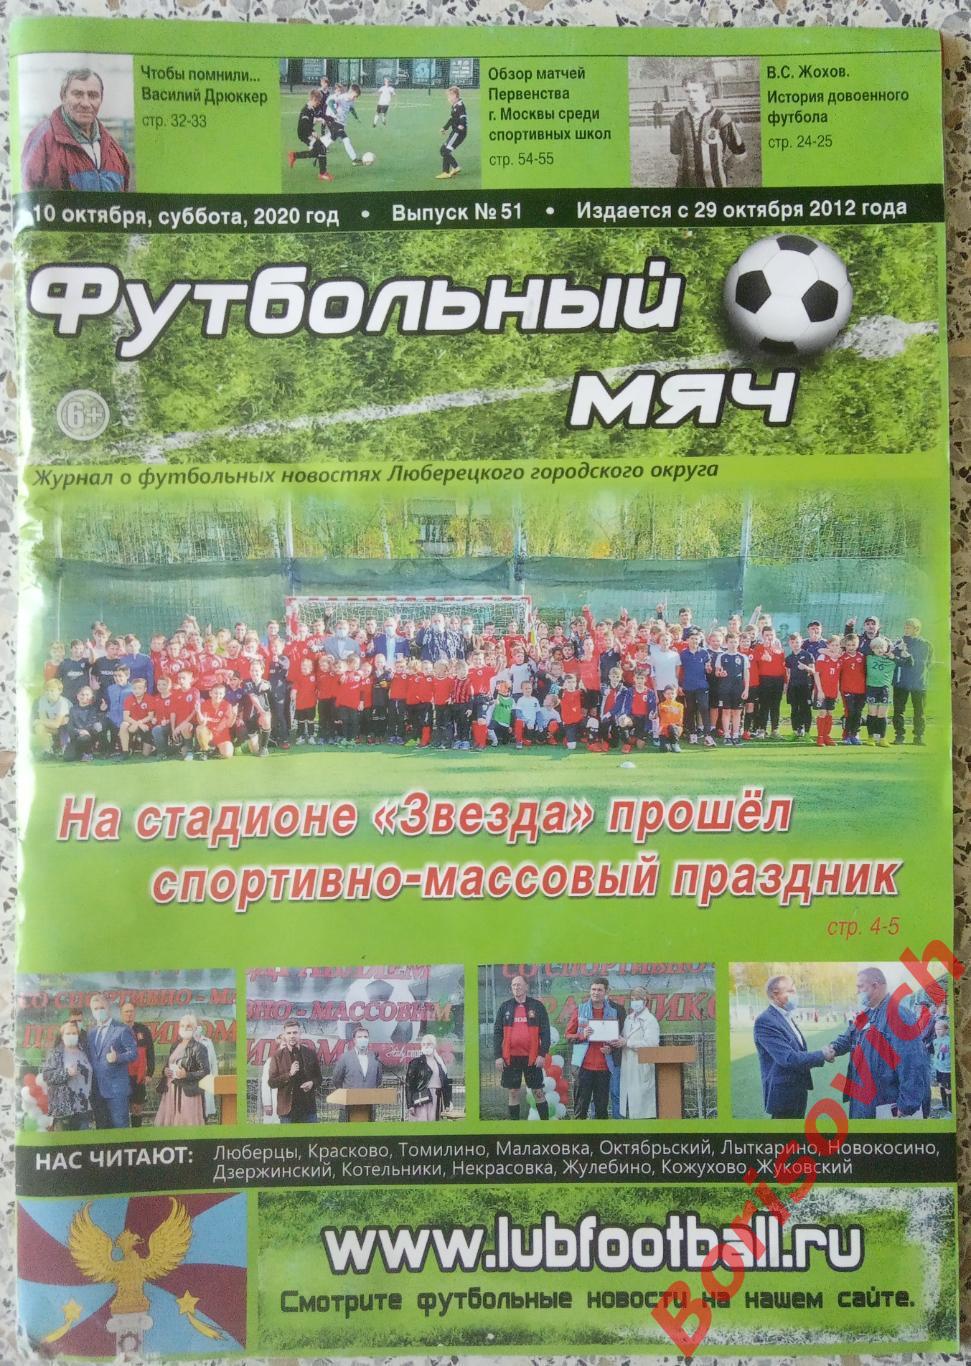 Журнал ФУТБОЛЬНЫЙ МЯЧ 2020 N 51 О футбольных новостях Люберецкого округа